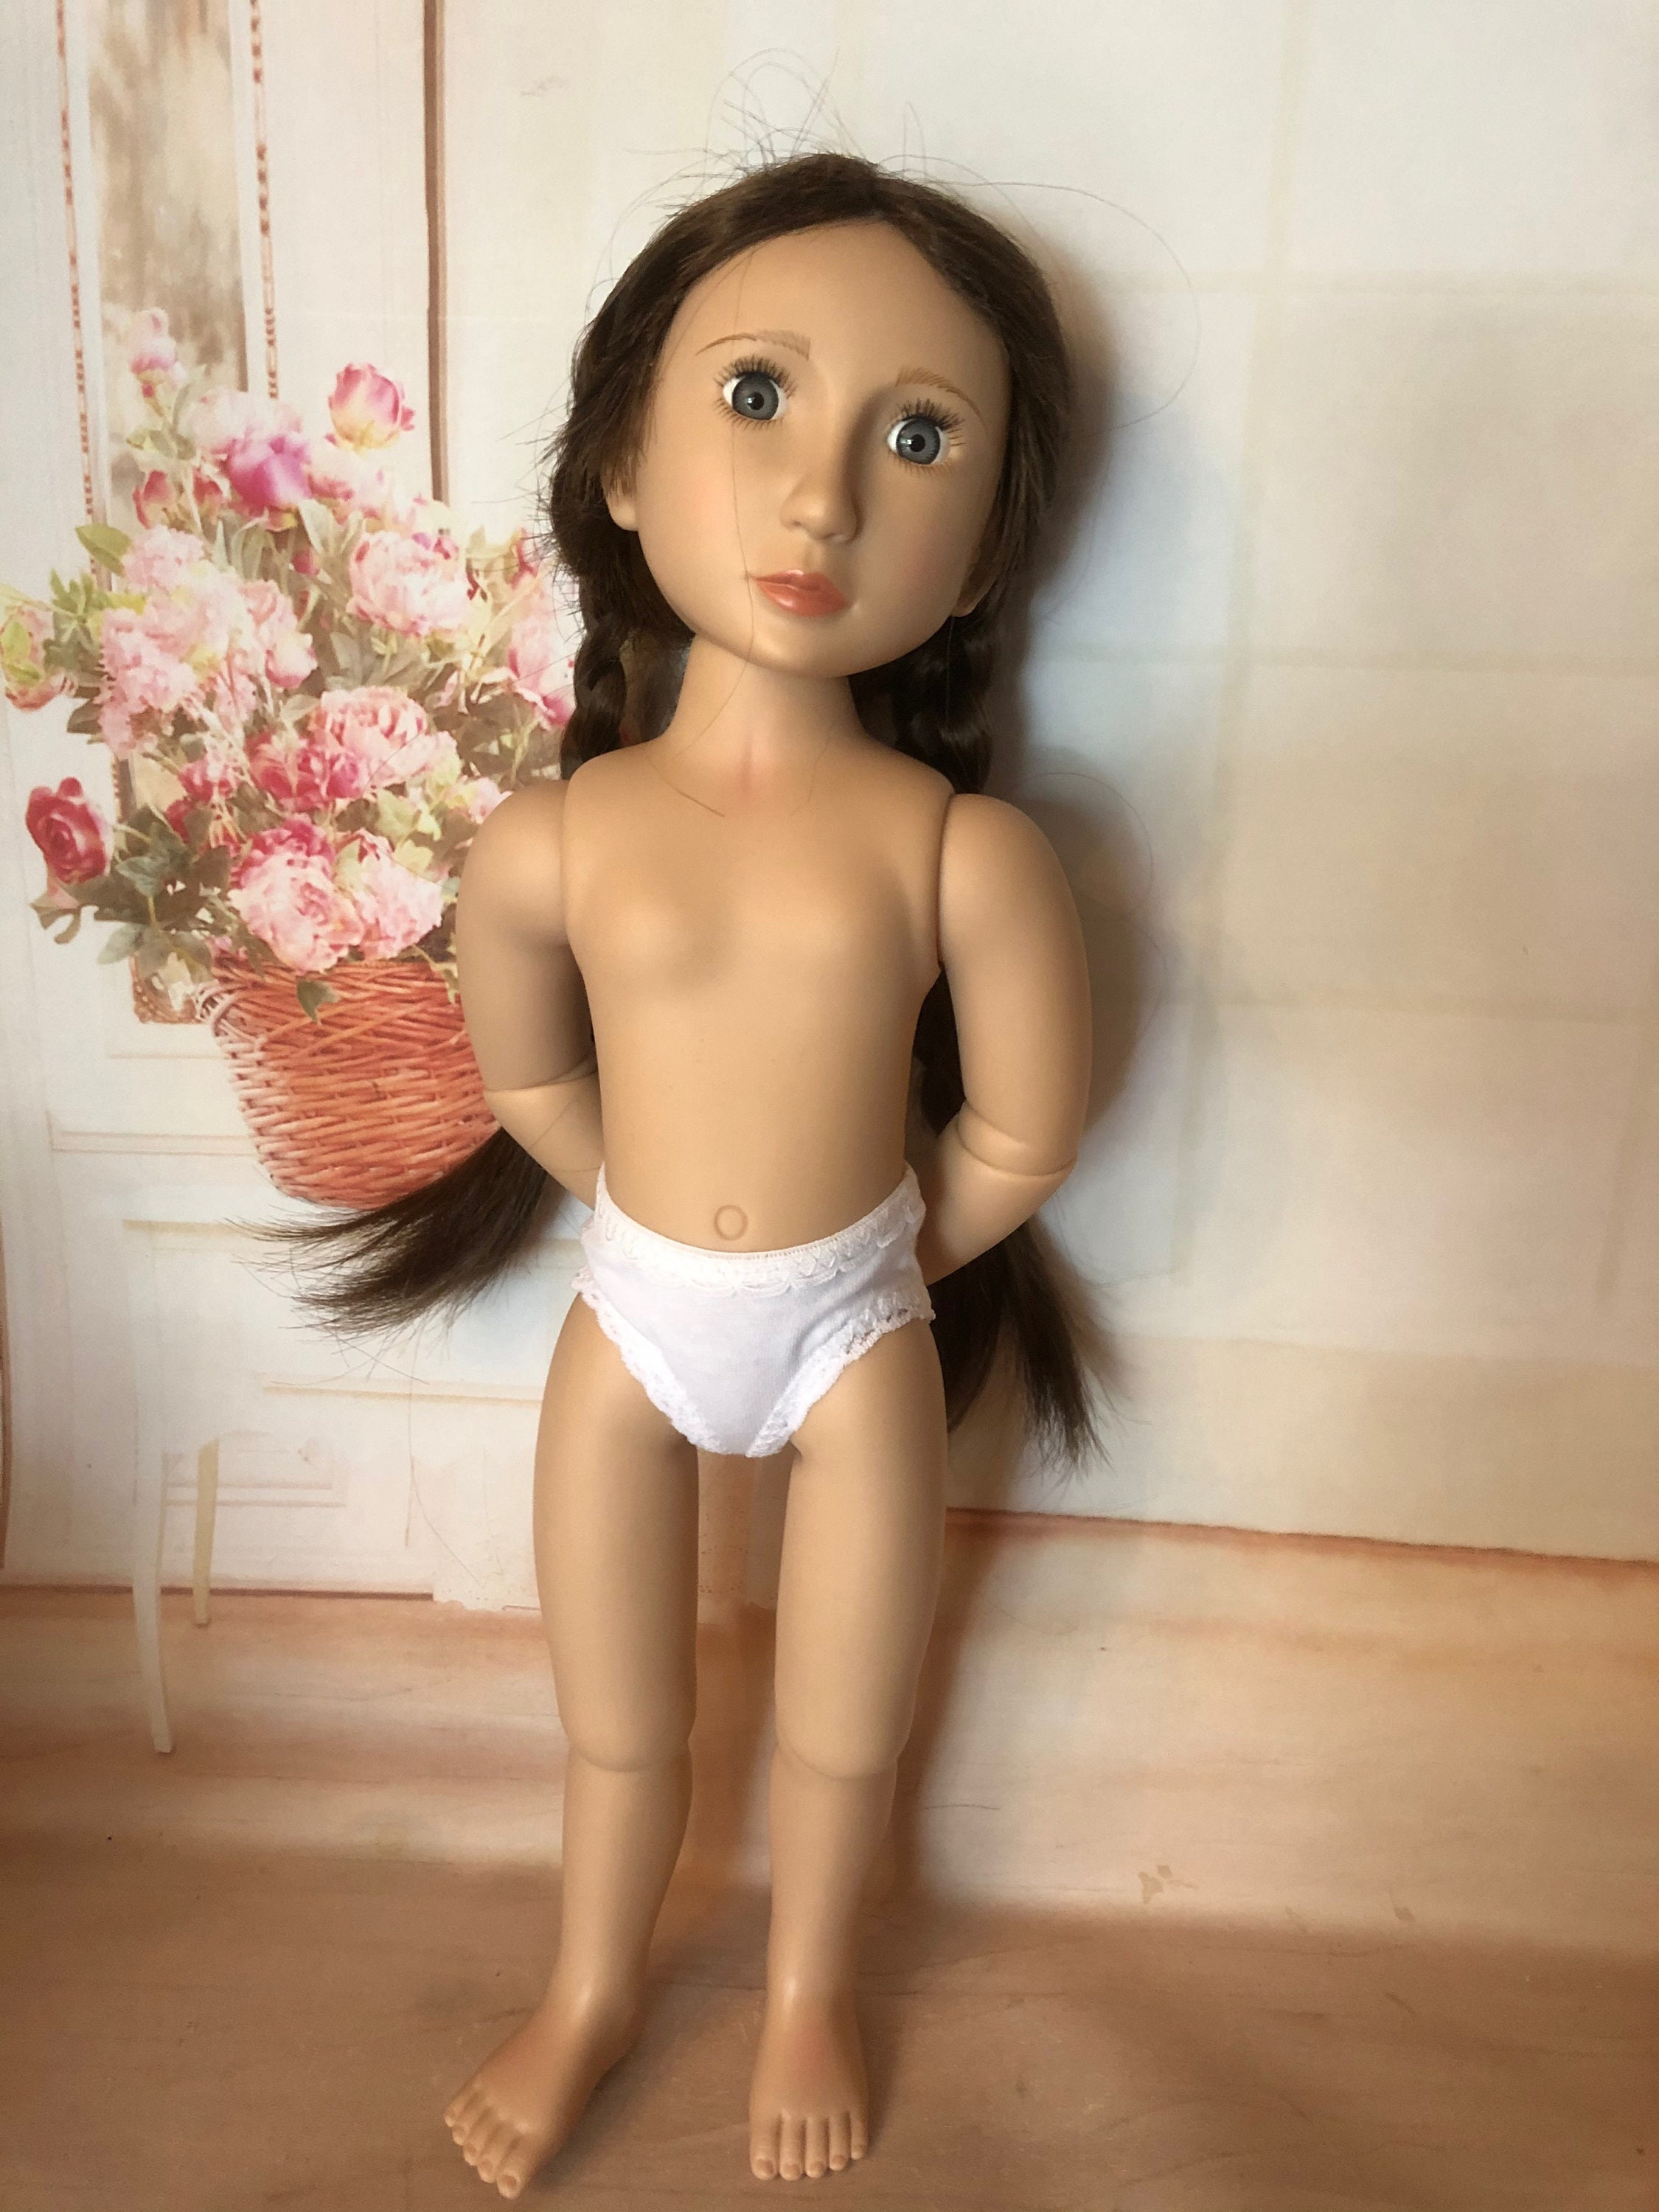 Kit de Roupas e Acessórios para Bonecas Barbie - Sheilinha